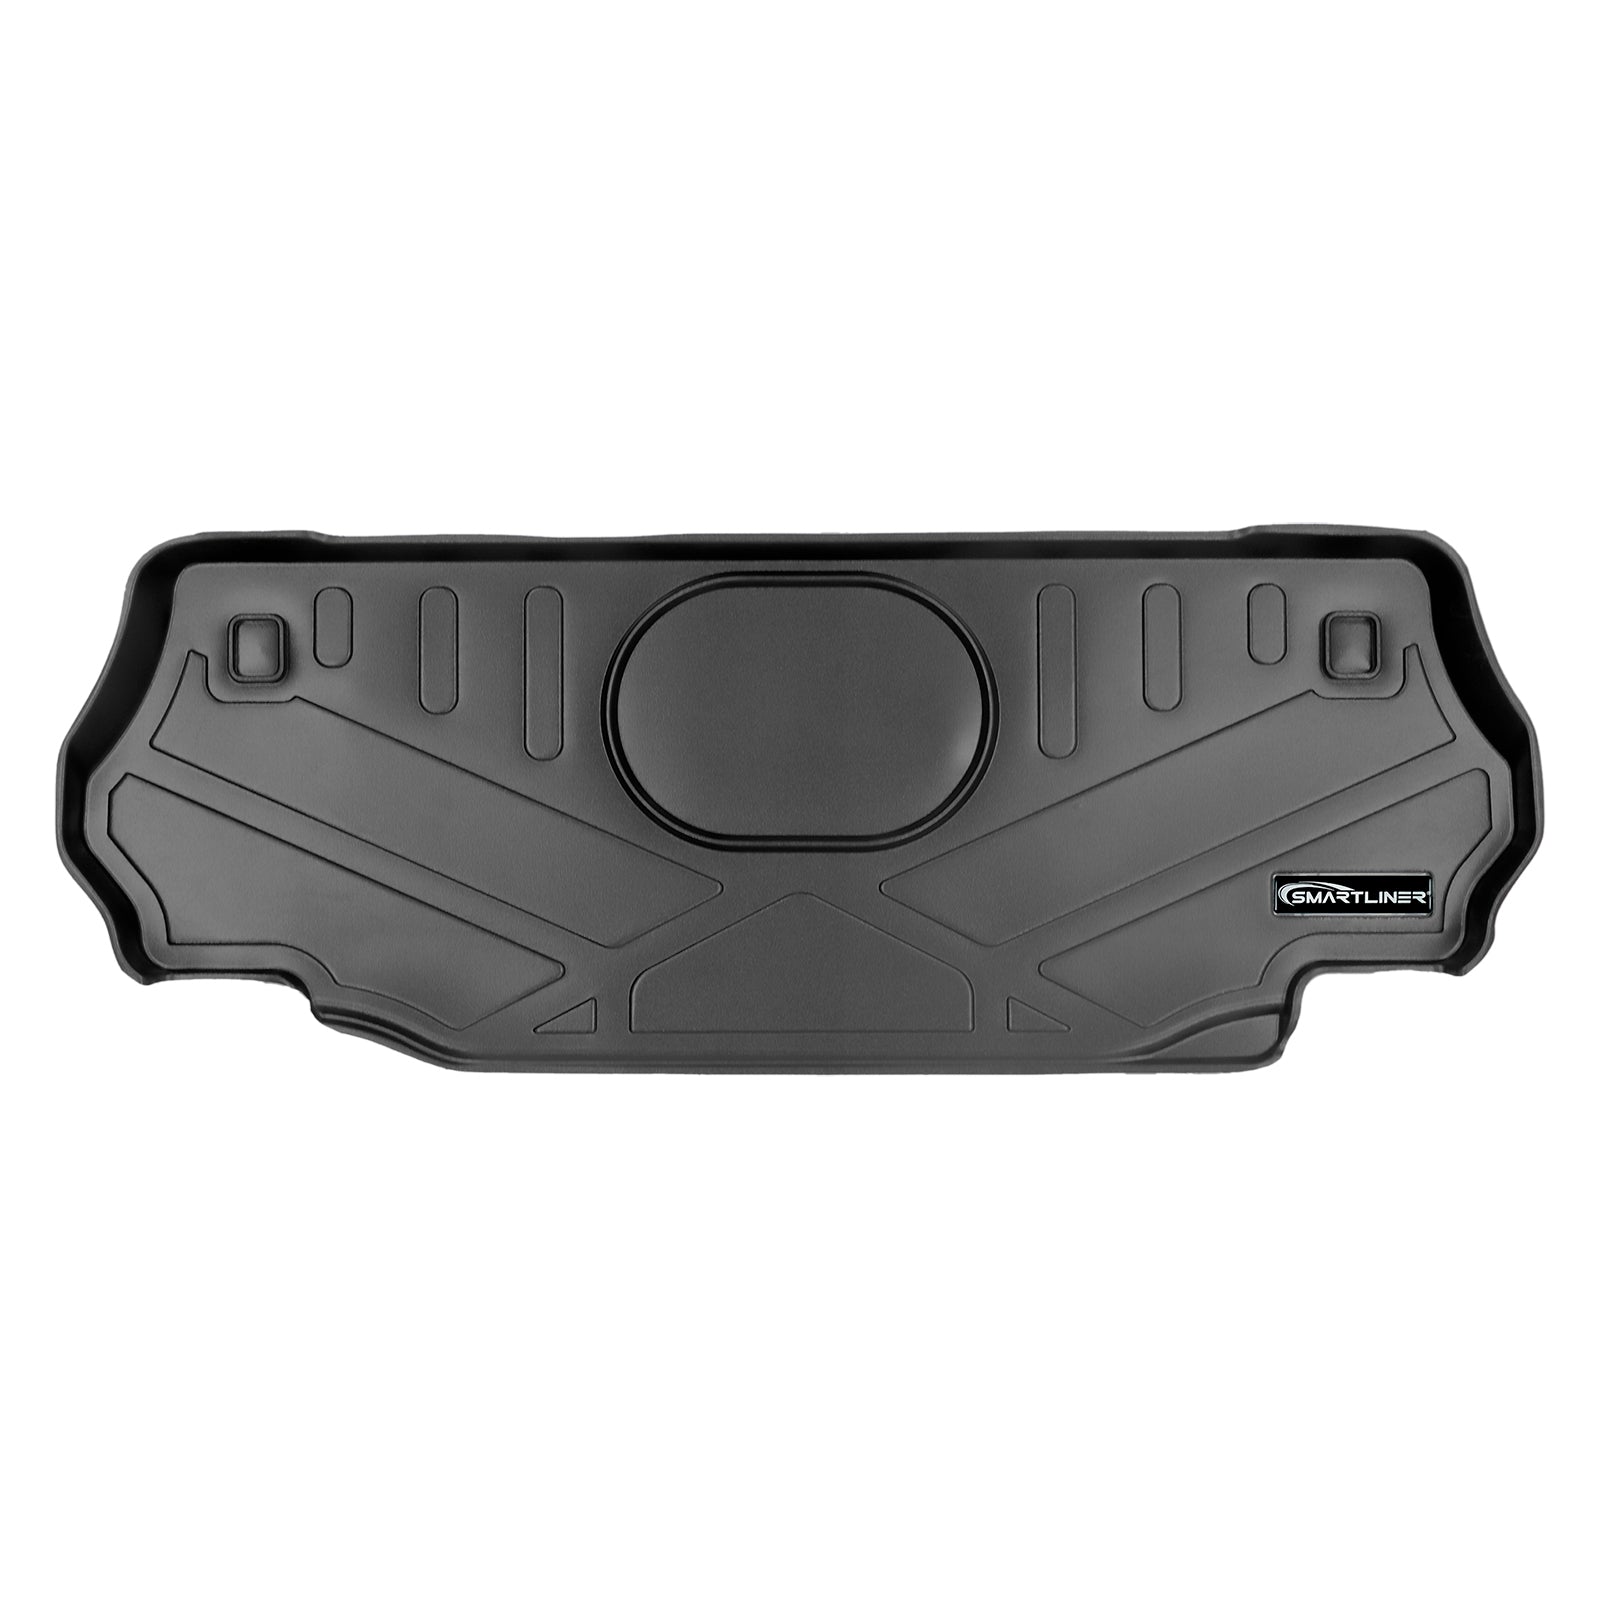 SMARTLINER Custom Fit Floor Liners For 2011-2013 Jeep Wrangler 2-Door Models Only